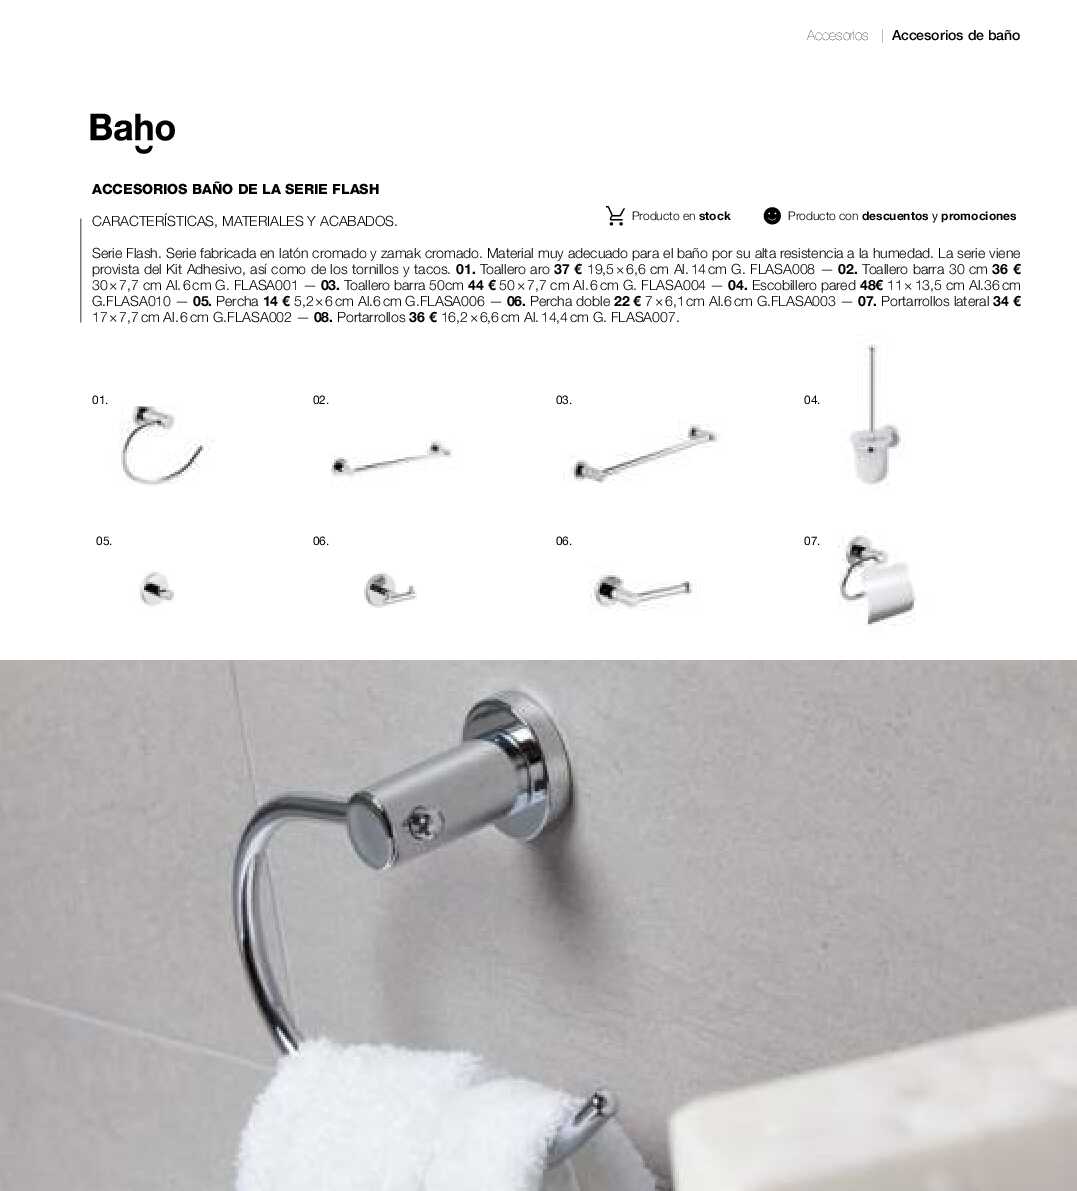 Catálogo de baños Gamma. Página 204